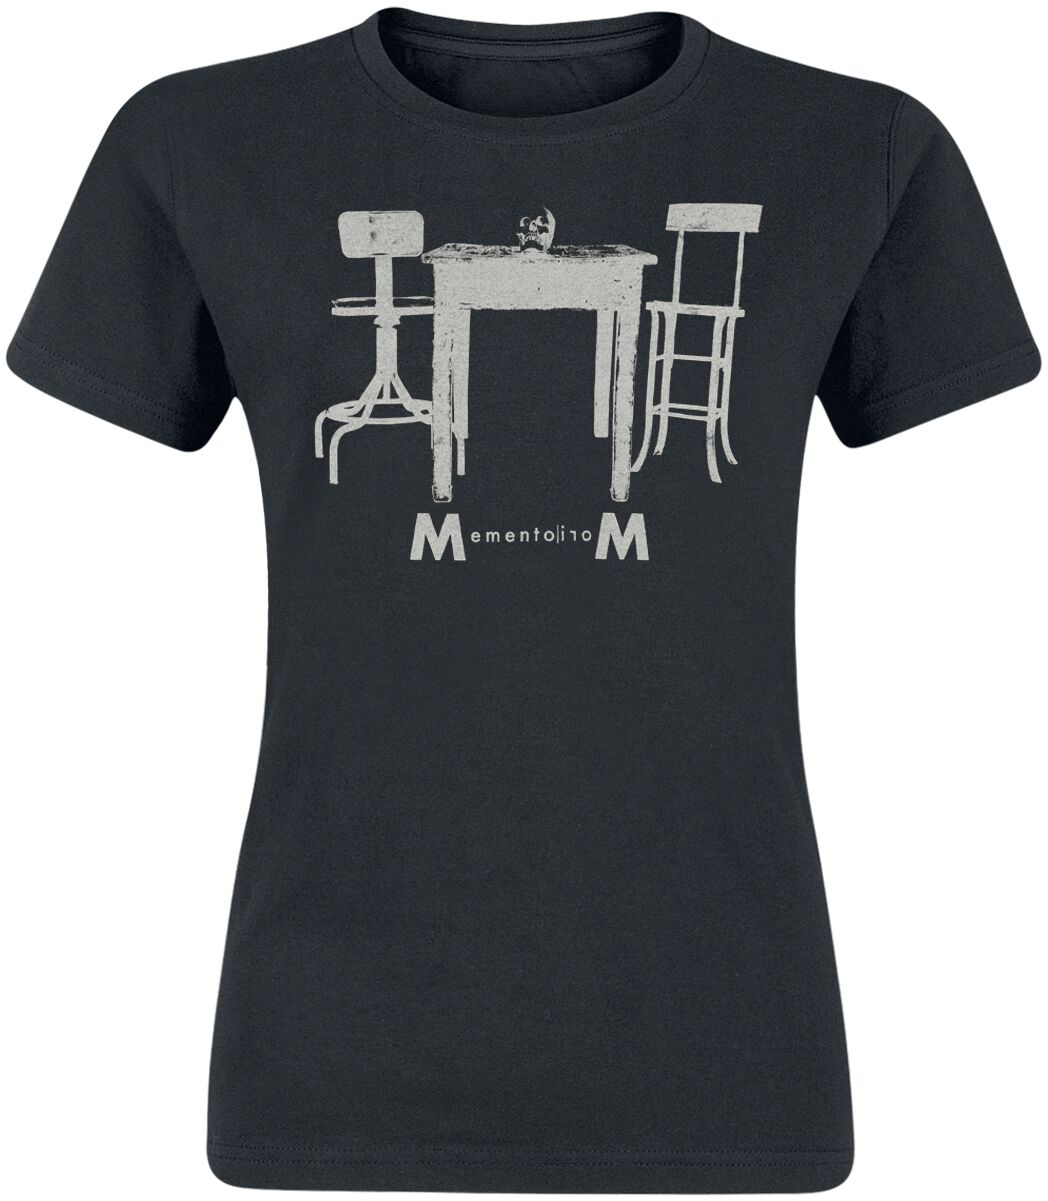 Depeche Mode T-Shirt - Table And Chairs - XL - für Damen - Größe XL - schwarz  - Lizenziertes Merchandise!